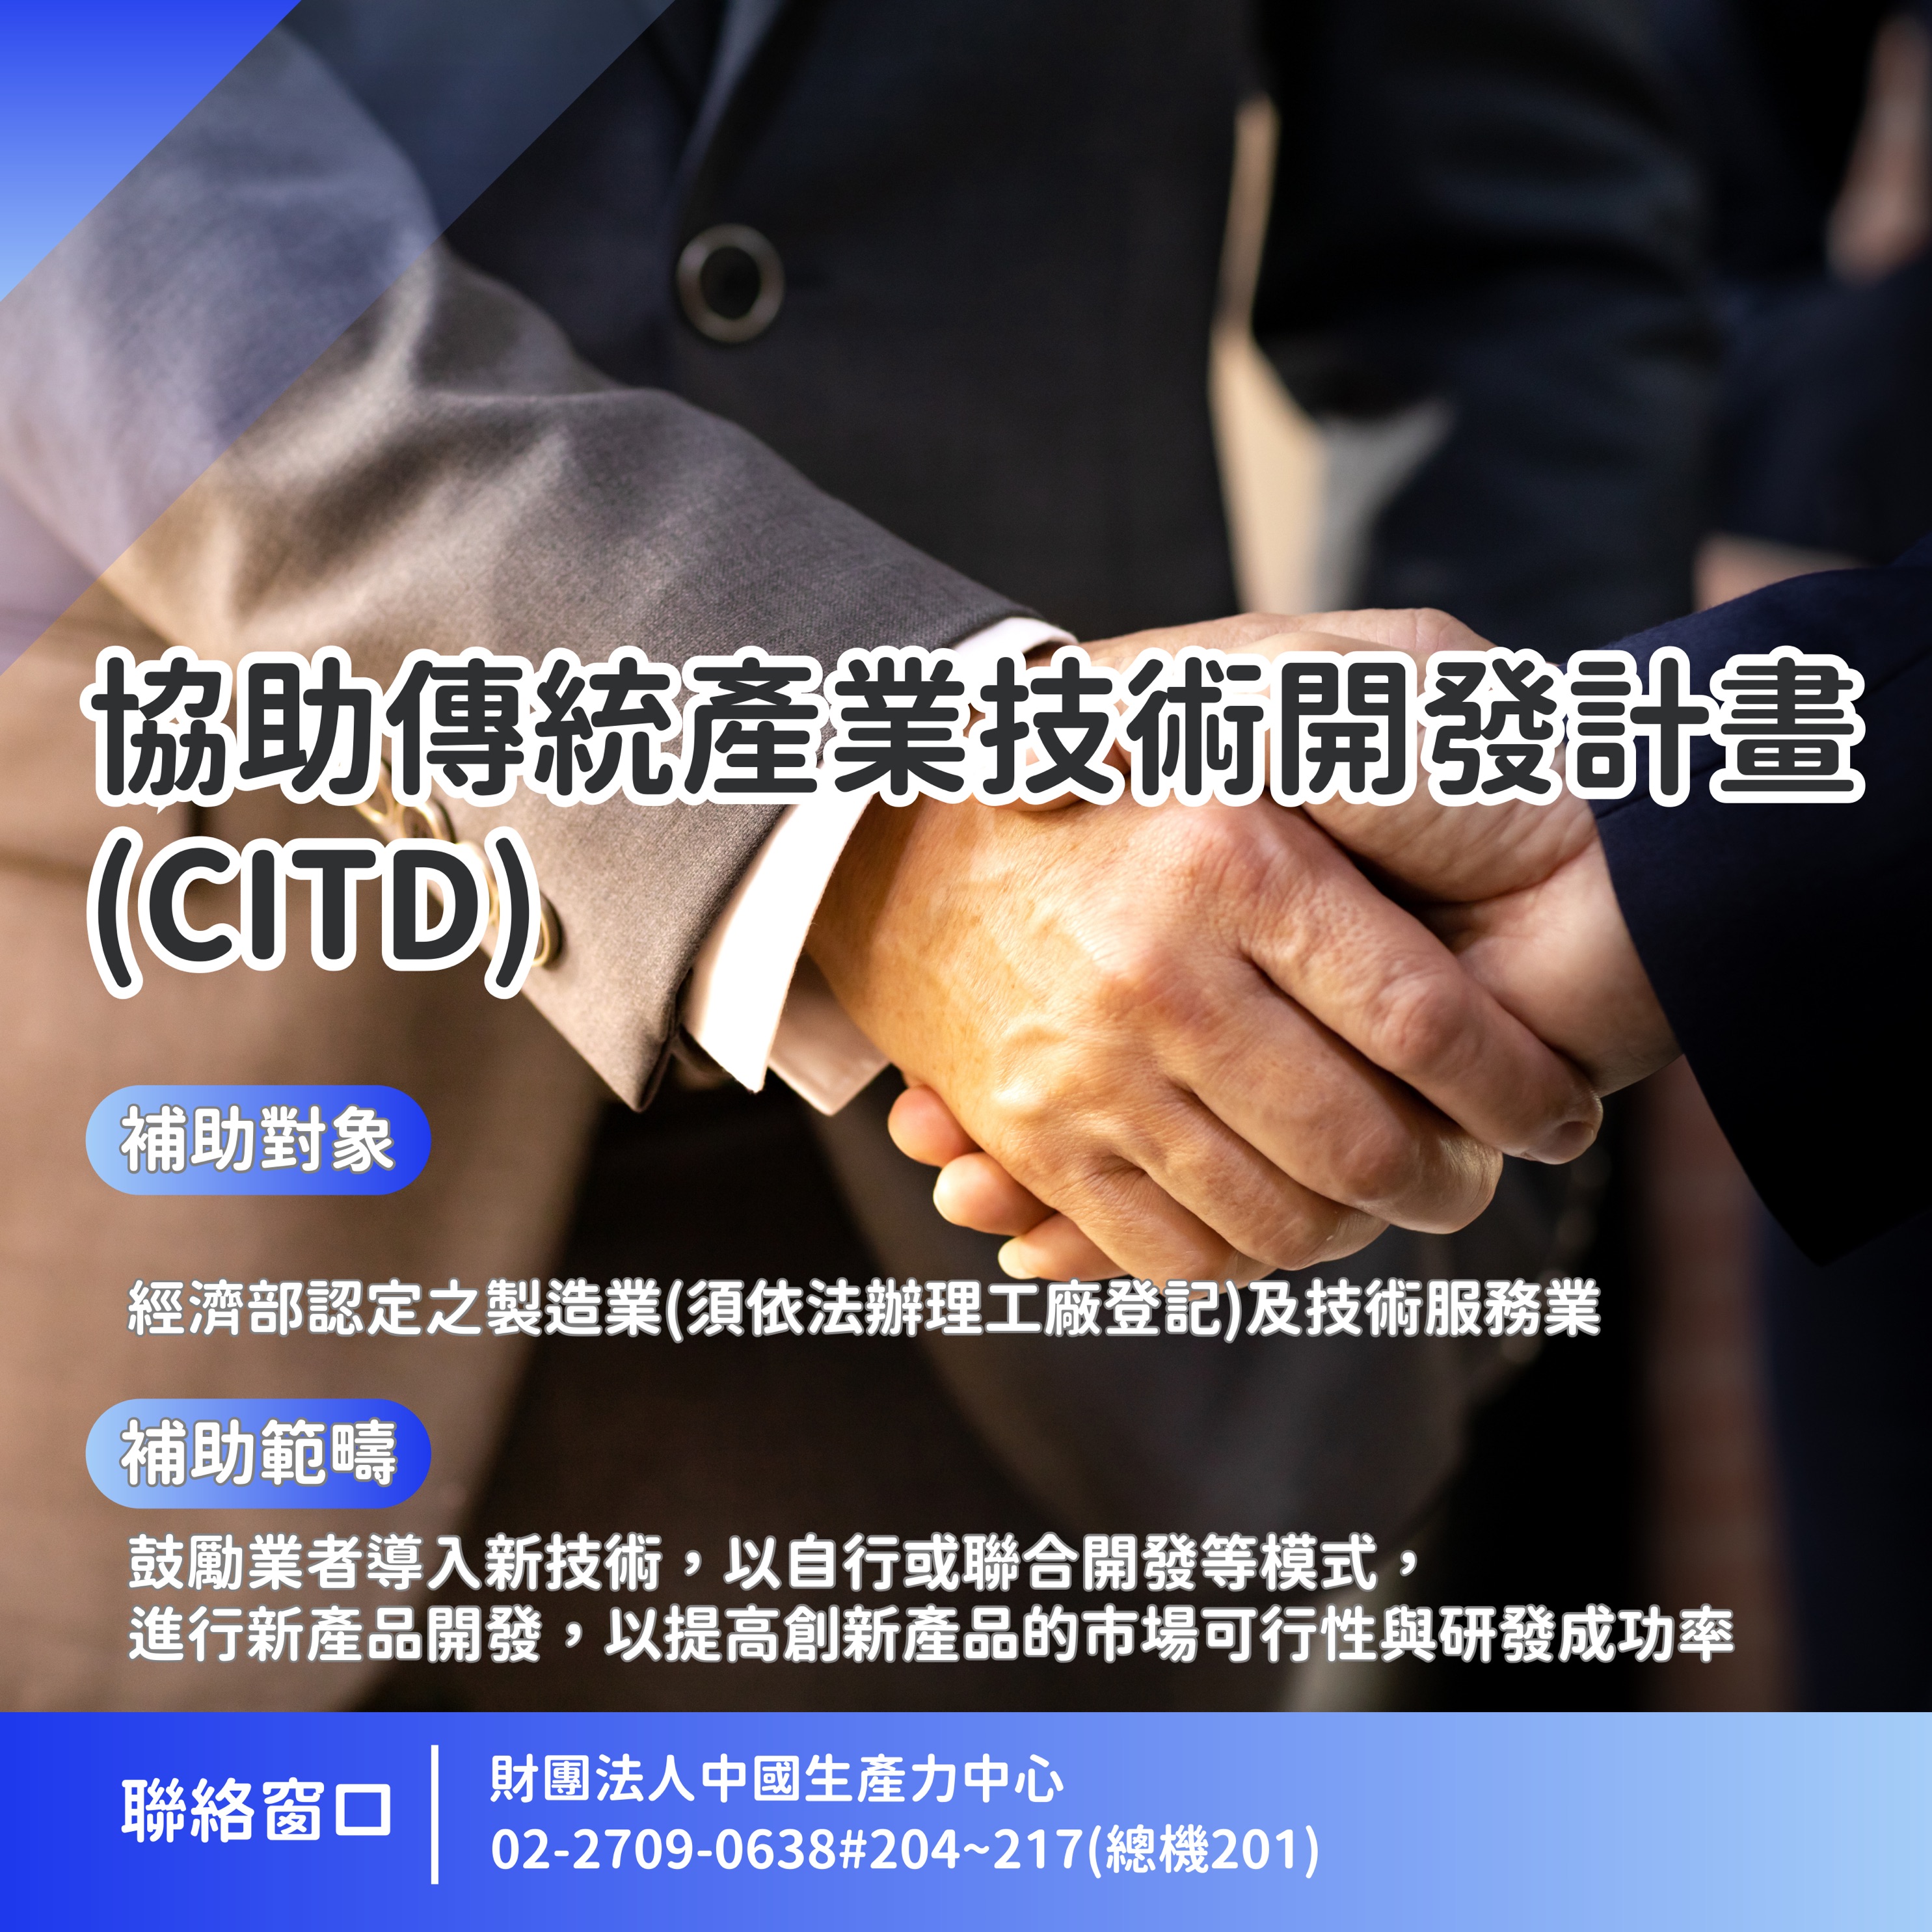 協助傳統產業技術開發計畫(CITD)圖卡